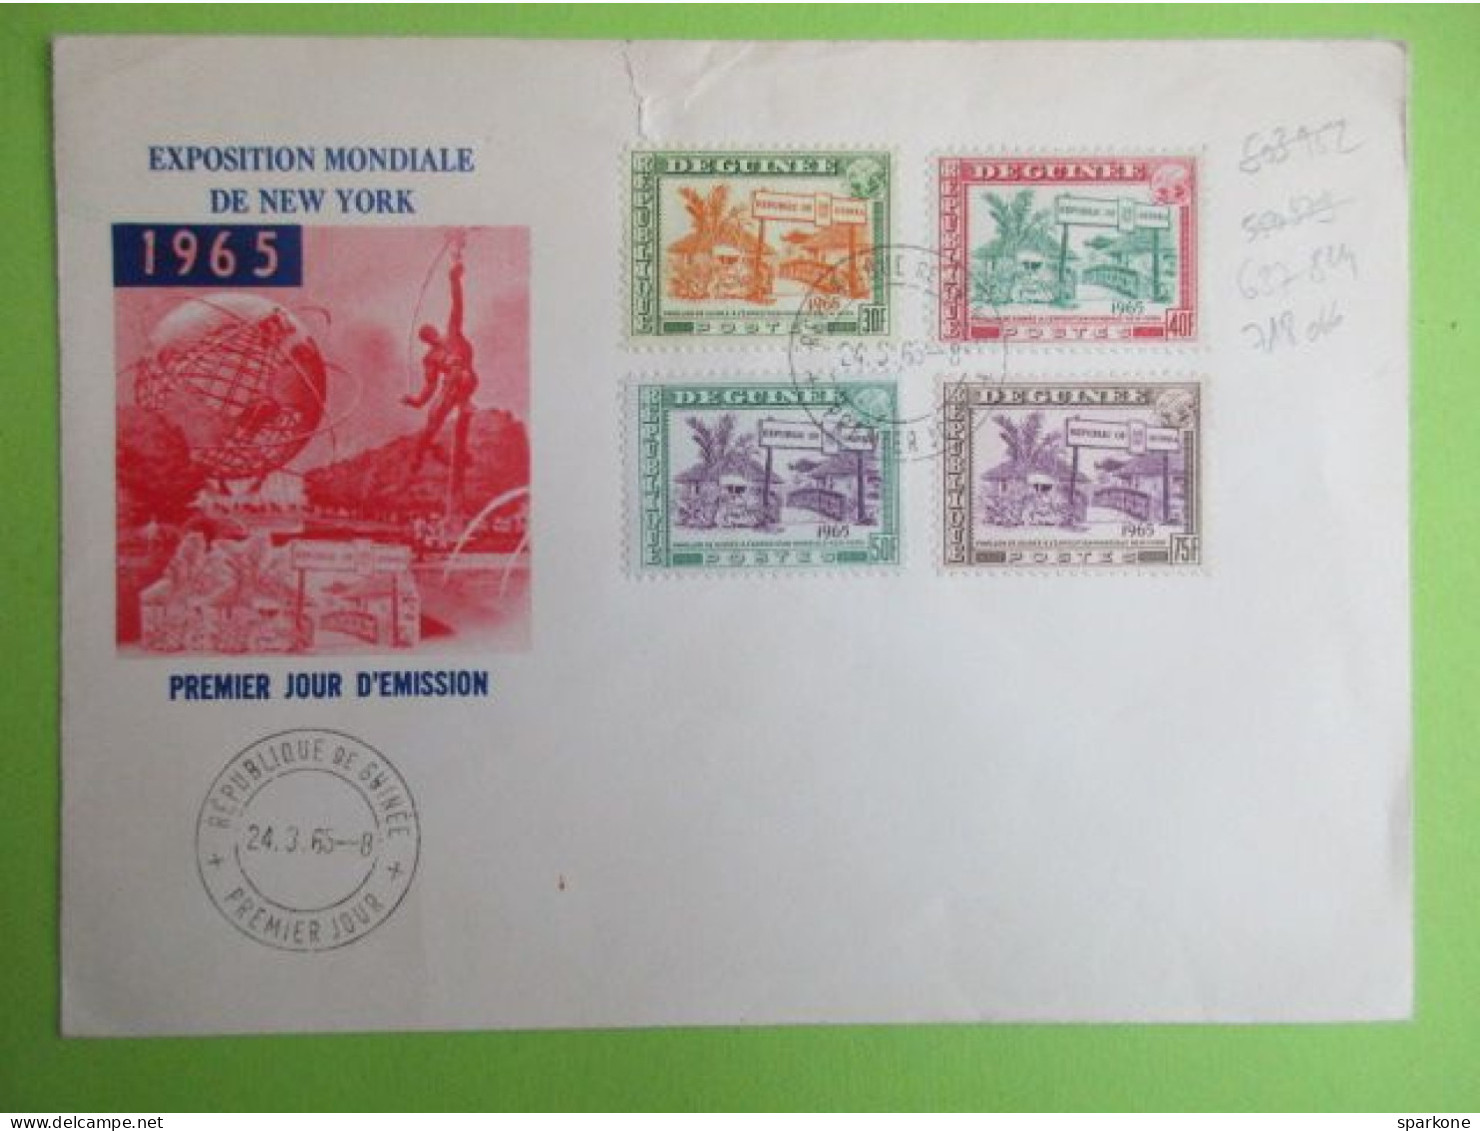 Marcophilie - Enveloppes De 1965 - Exposition Mondial De New York - Premier Jours D'émission - Äquatorial-Guinea